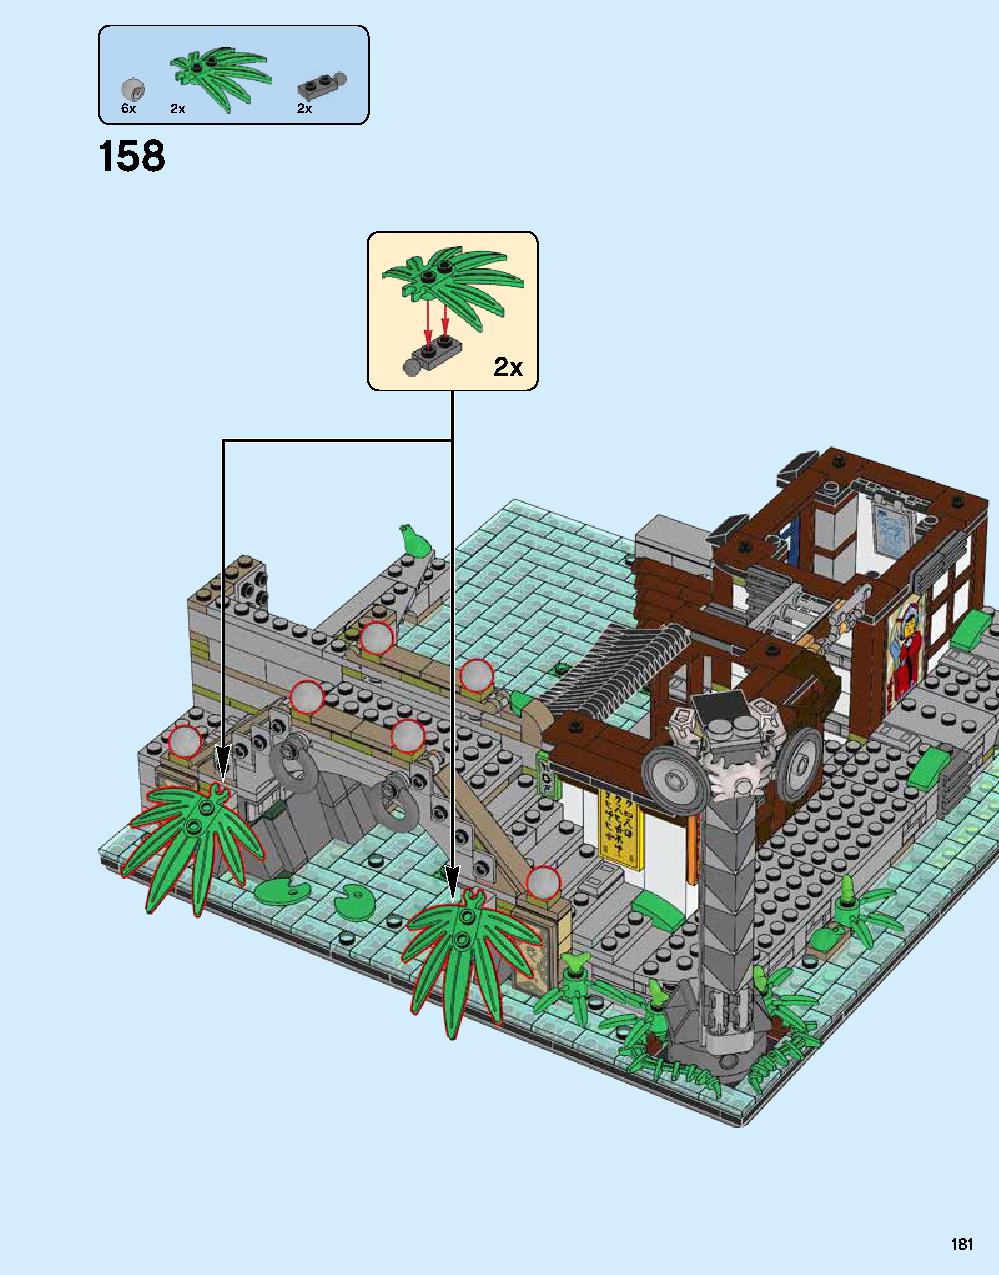 ニンジャゴー シティ 70620 レゴの商品情報 レゴの説明書・組立方法 181 page